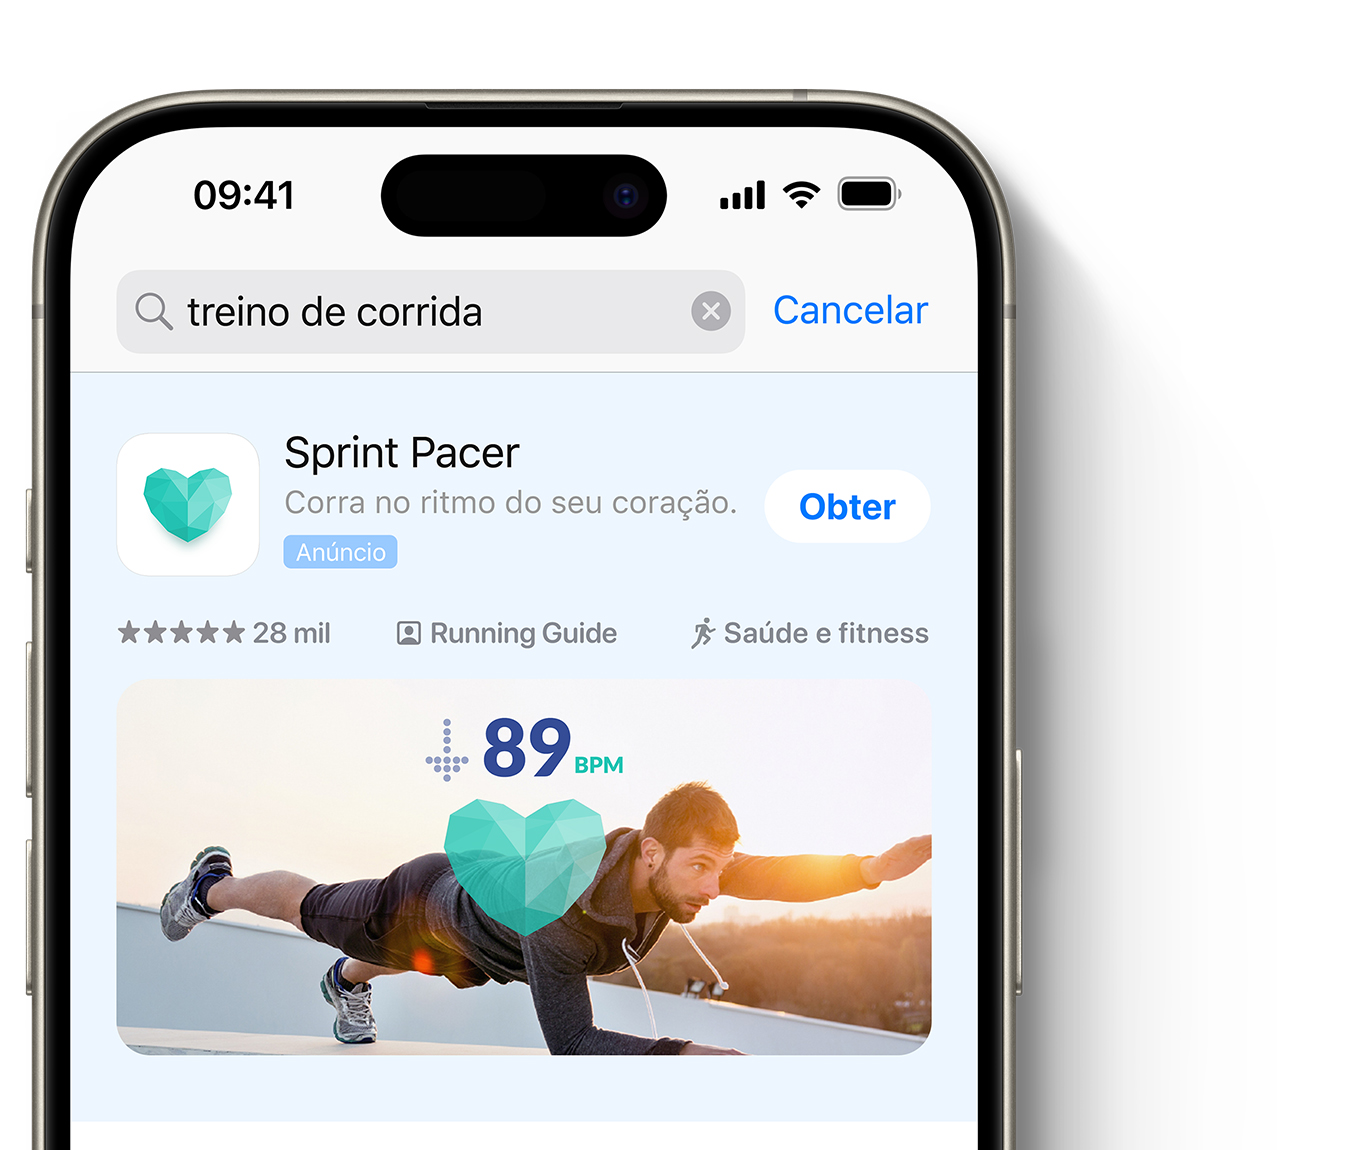 Um anúncio do app Sprint Pacer aparece no topo dos resultados de busca da App Store.